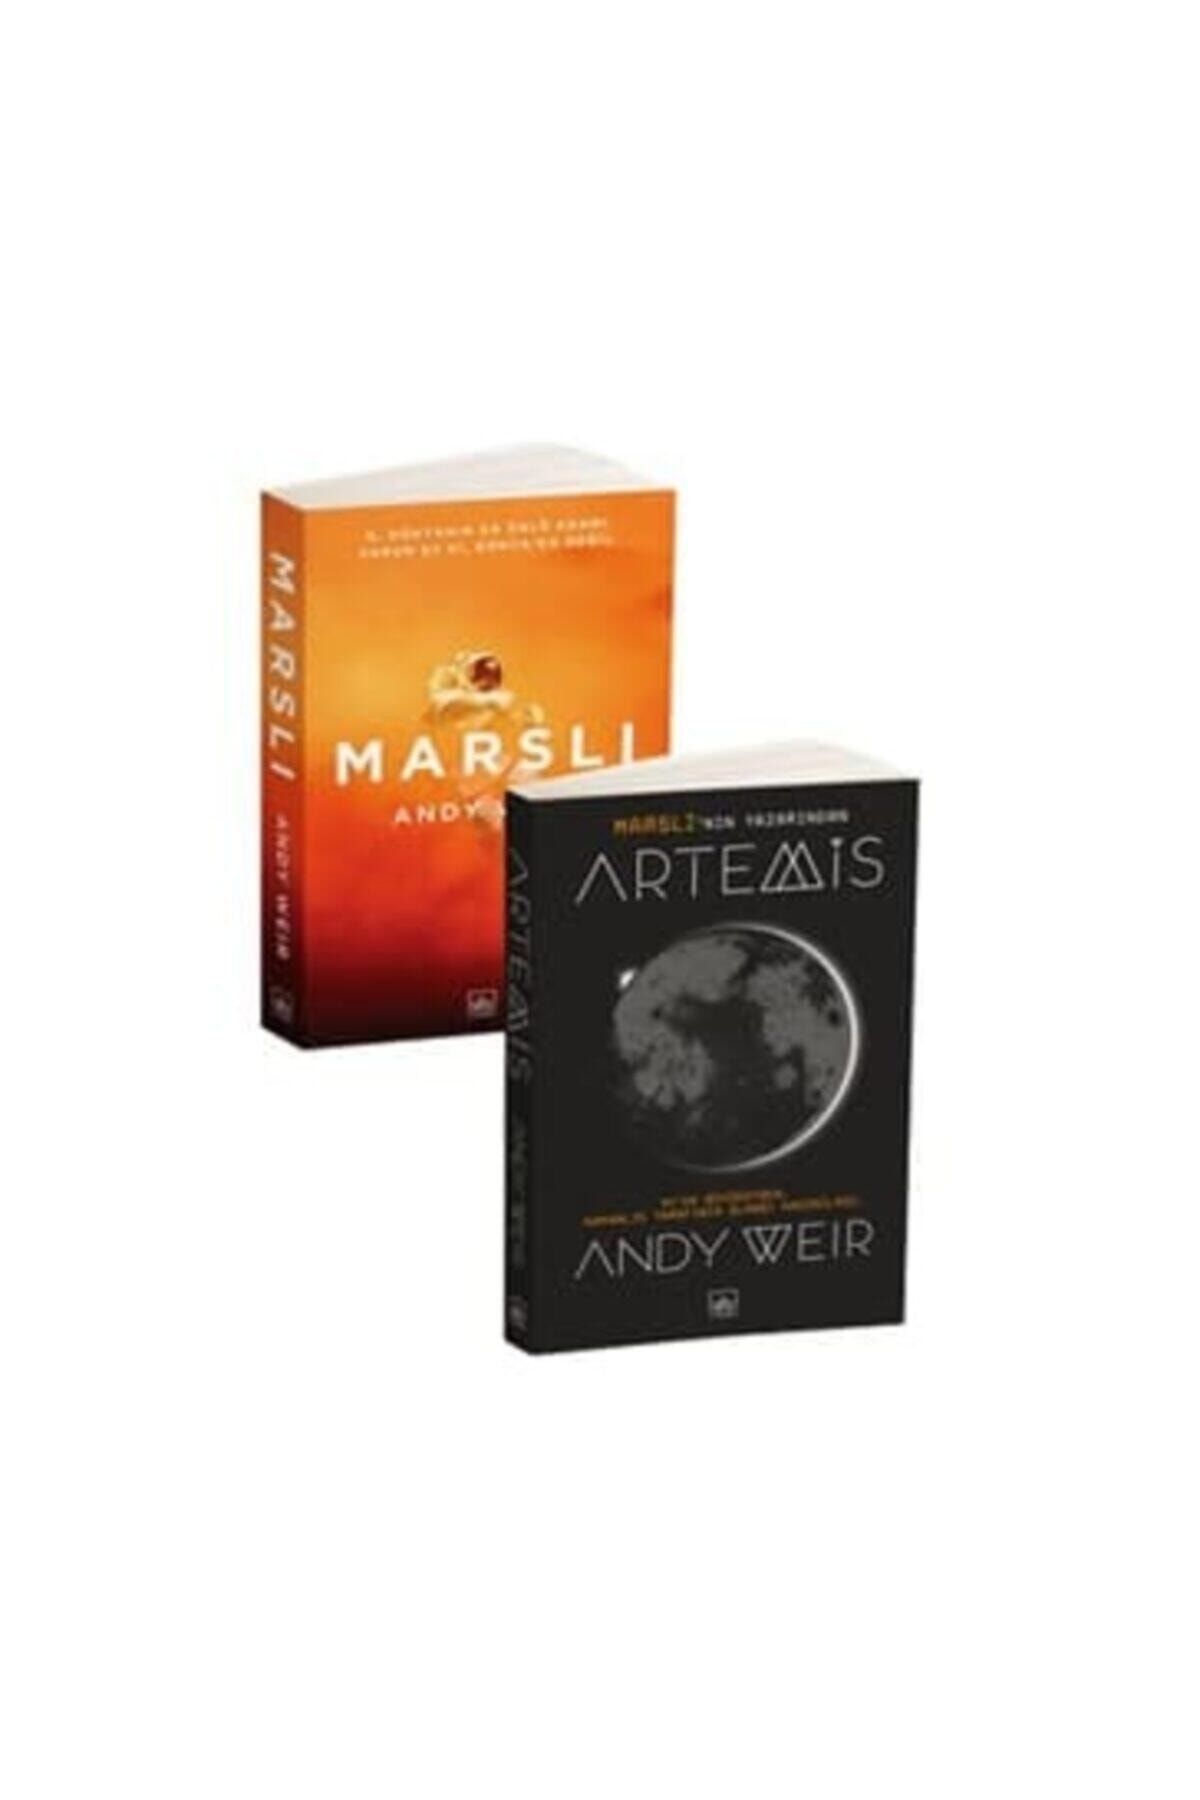 İthaki Yayınları Andy Weir 2 Kitap Takımı Artemis Marslı